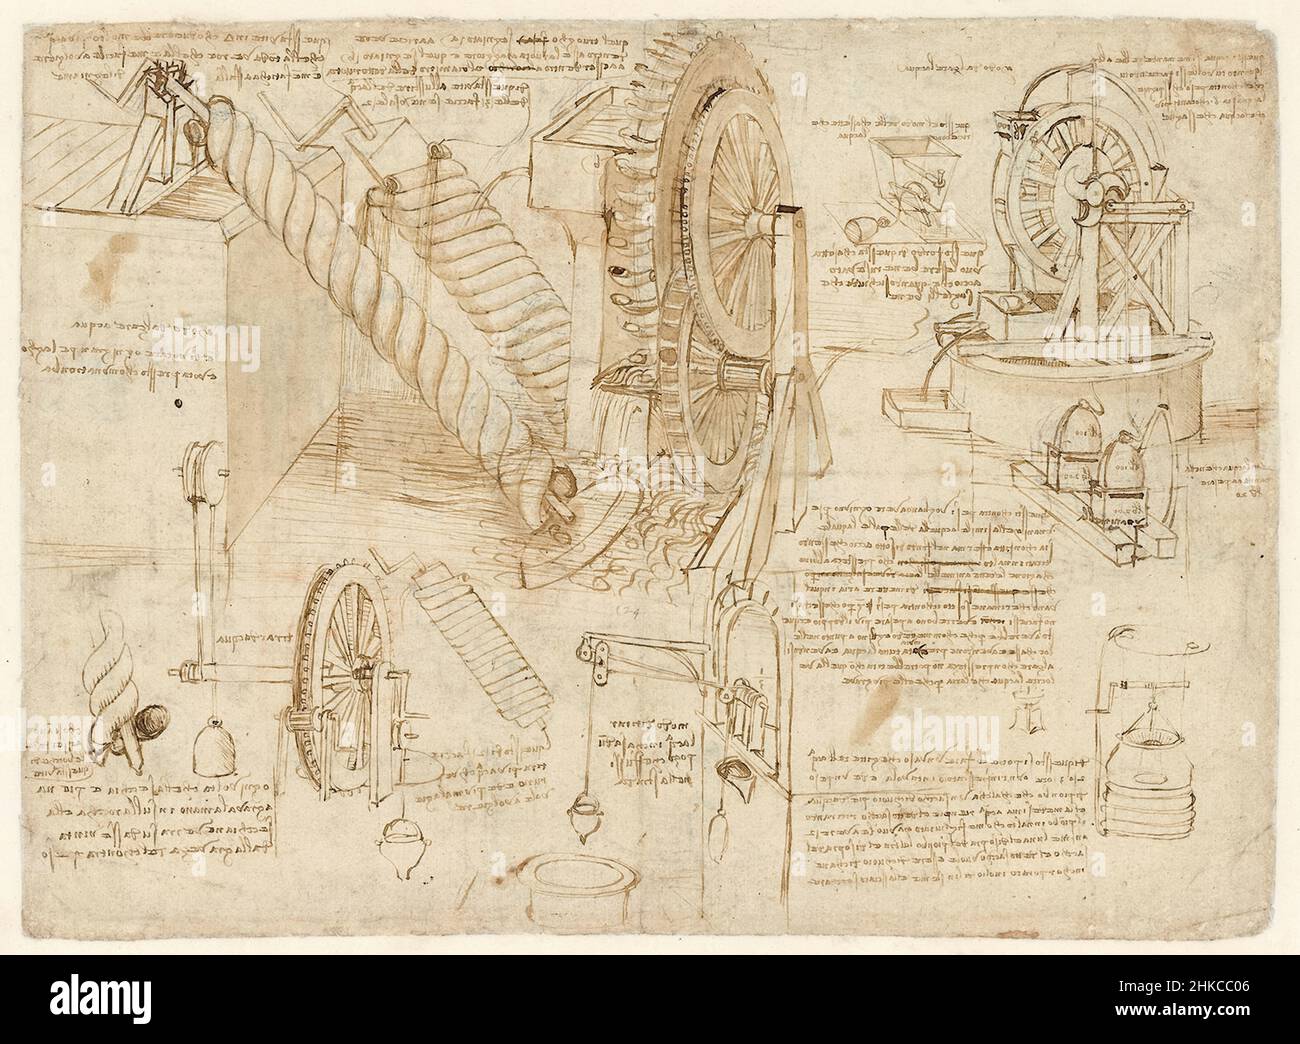 Dessins des roues d'eau et des vis d'archimède utilisés pour l'irrigation par Leonardo da Vinci (1452-1519) contenus dans le Codex Atlanticus un ensemble de plus de 1000 pages reliées datant de 1478 à 1519. Banque D'Images